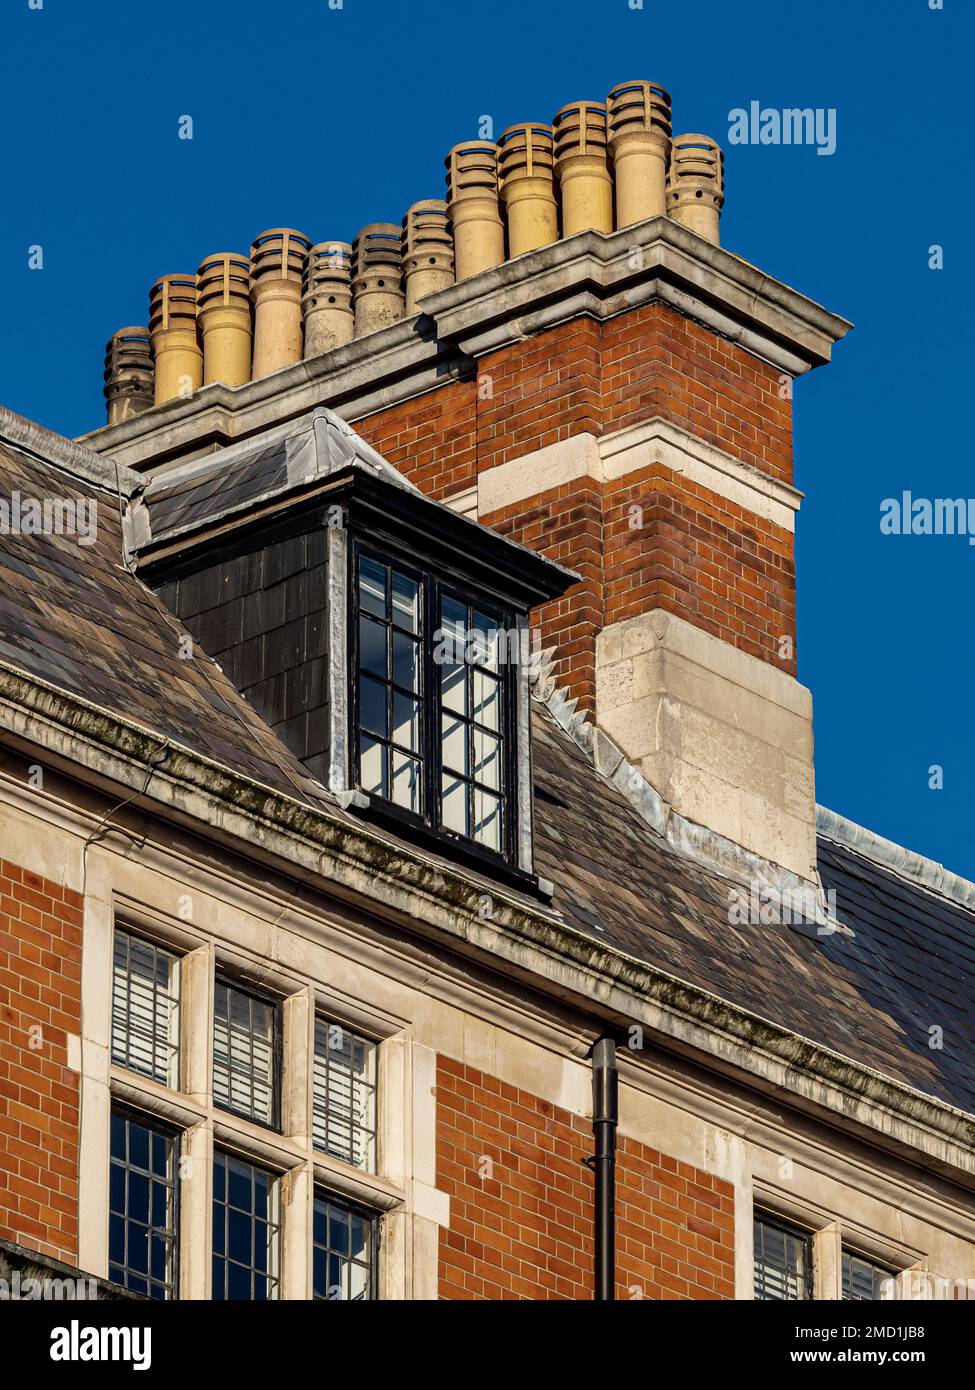 Chimney Pots London – mehrere Schornsteintöpfe auf einem Gebäude im Londoner Stadtteil Fitzrovia. Mehrere Schornsteine haben separate Schächte und jeder hat einen Topf. Stockfoto